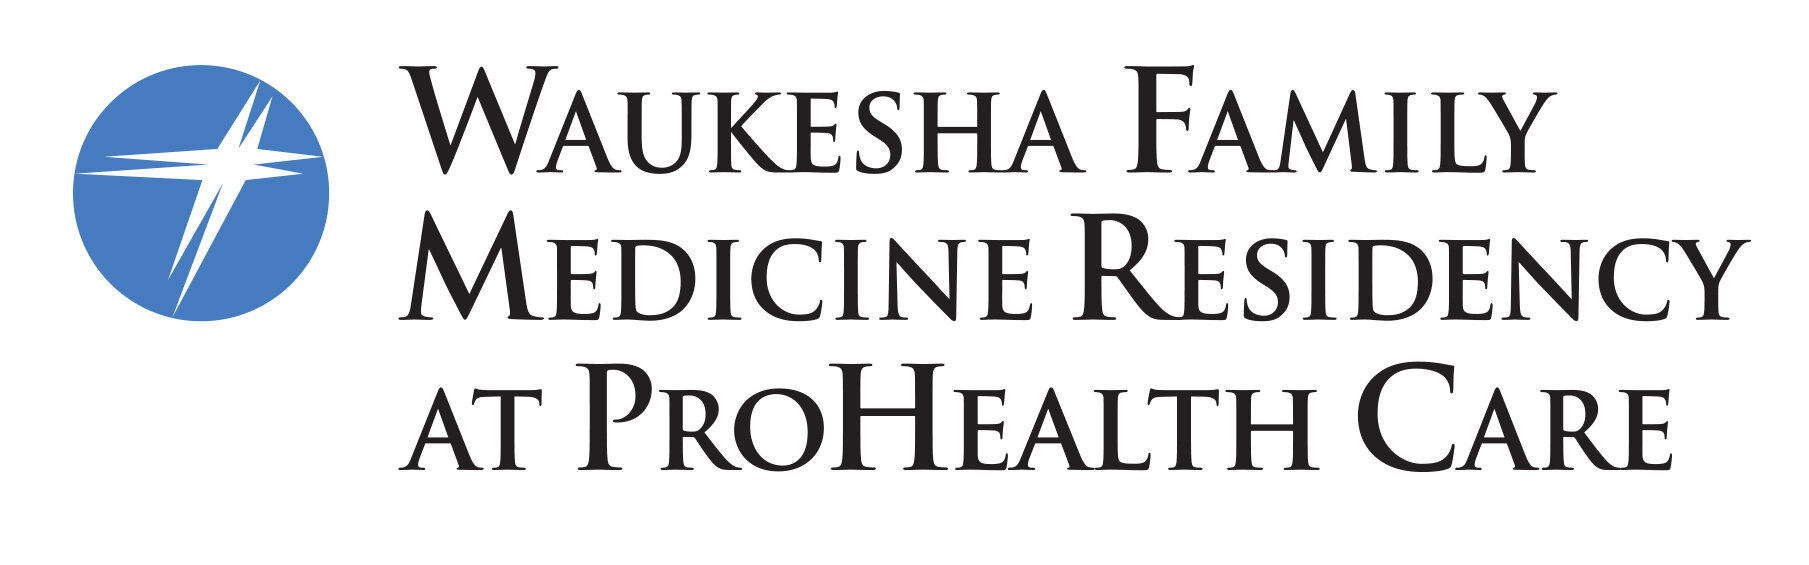 Waukesha Family Medicine